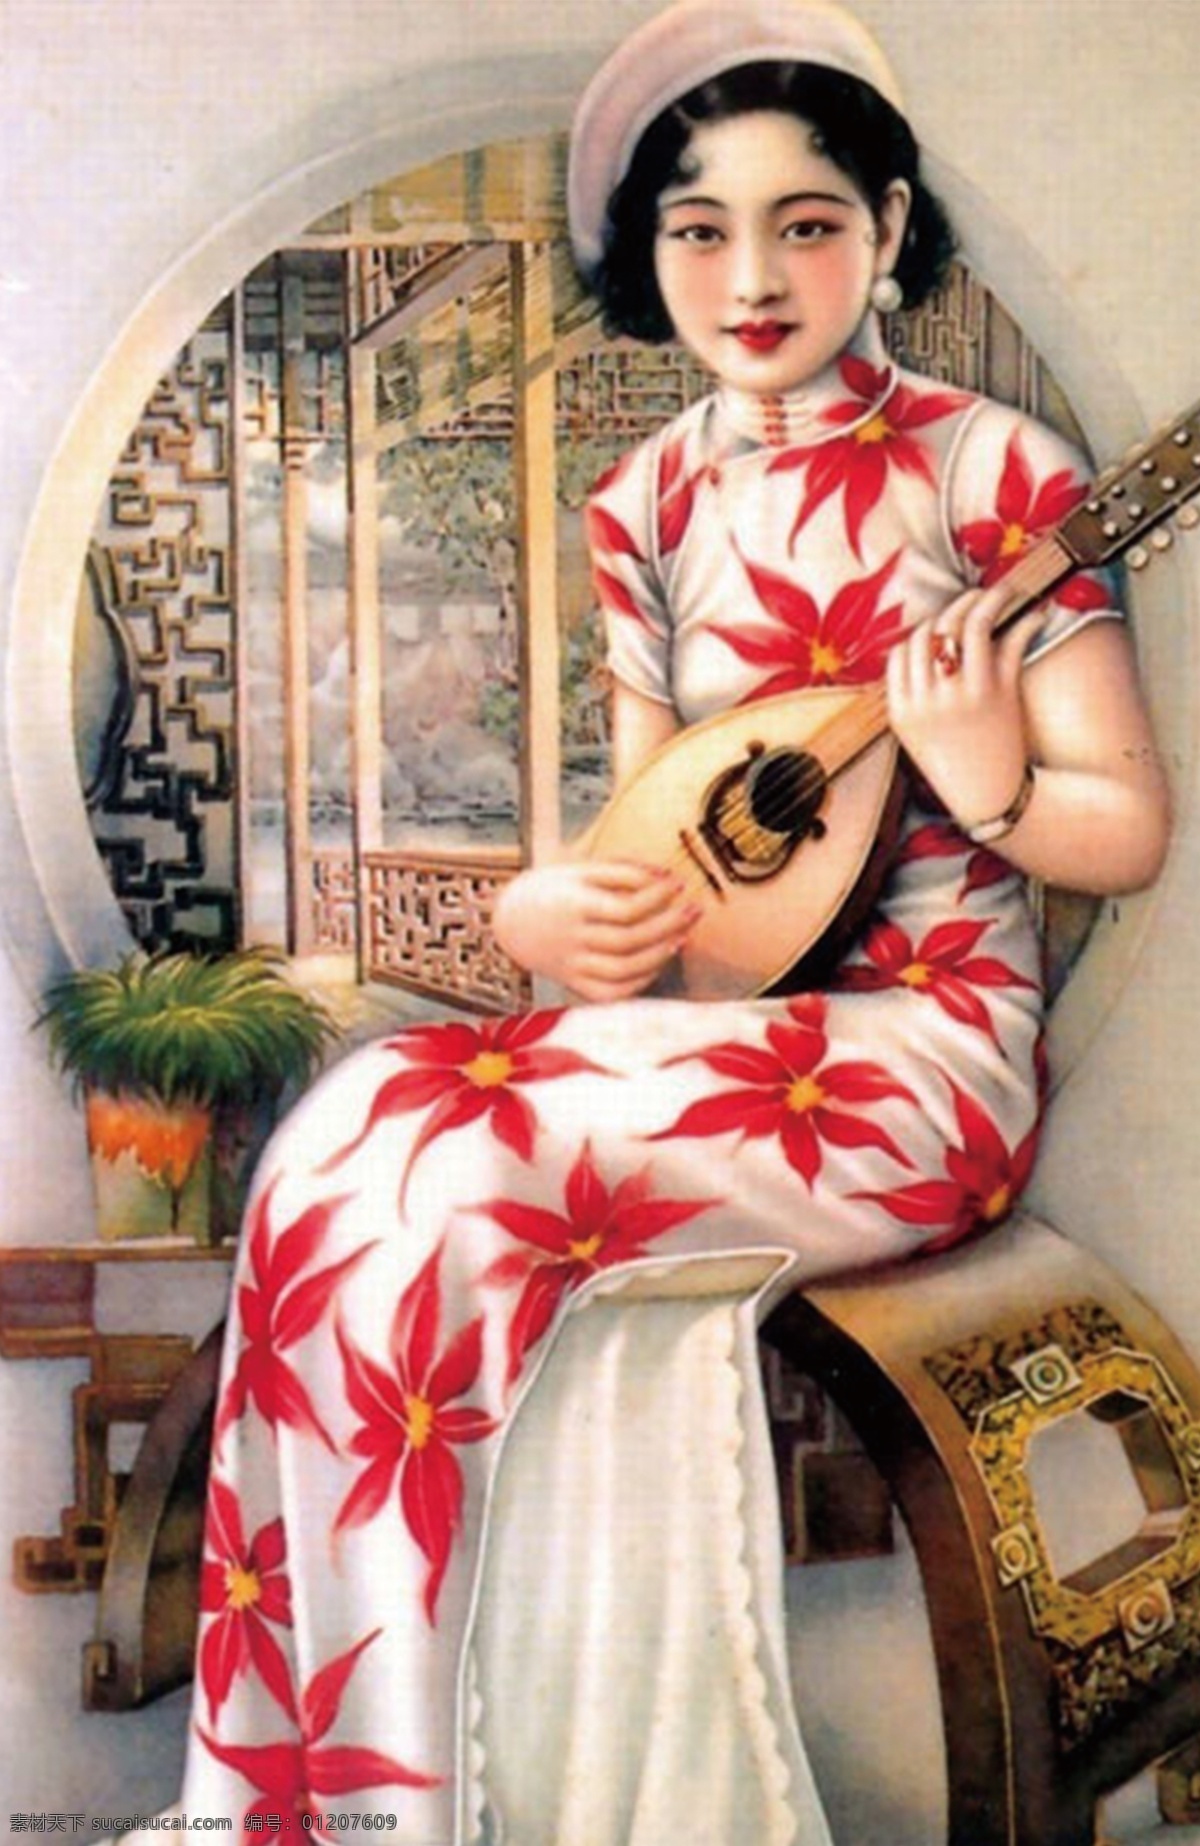 老上海装饰画 图 装饰画 老上海 女人 人物图库 女性妇女